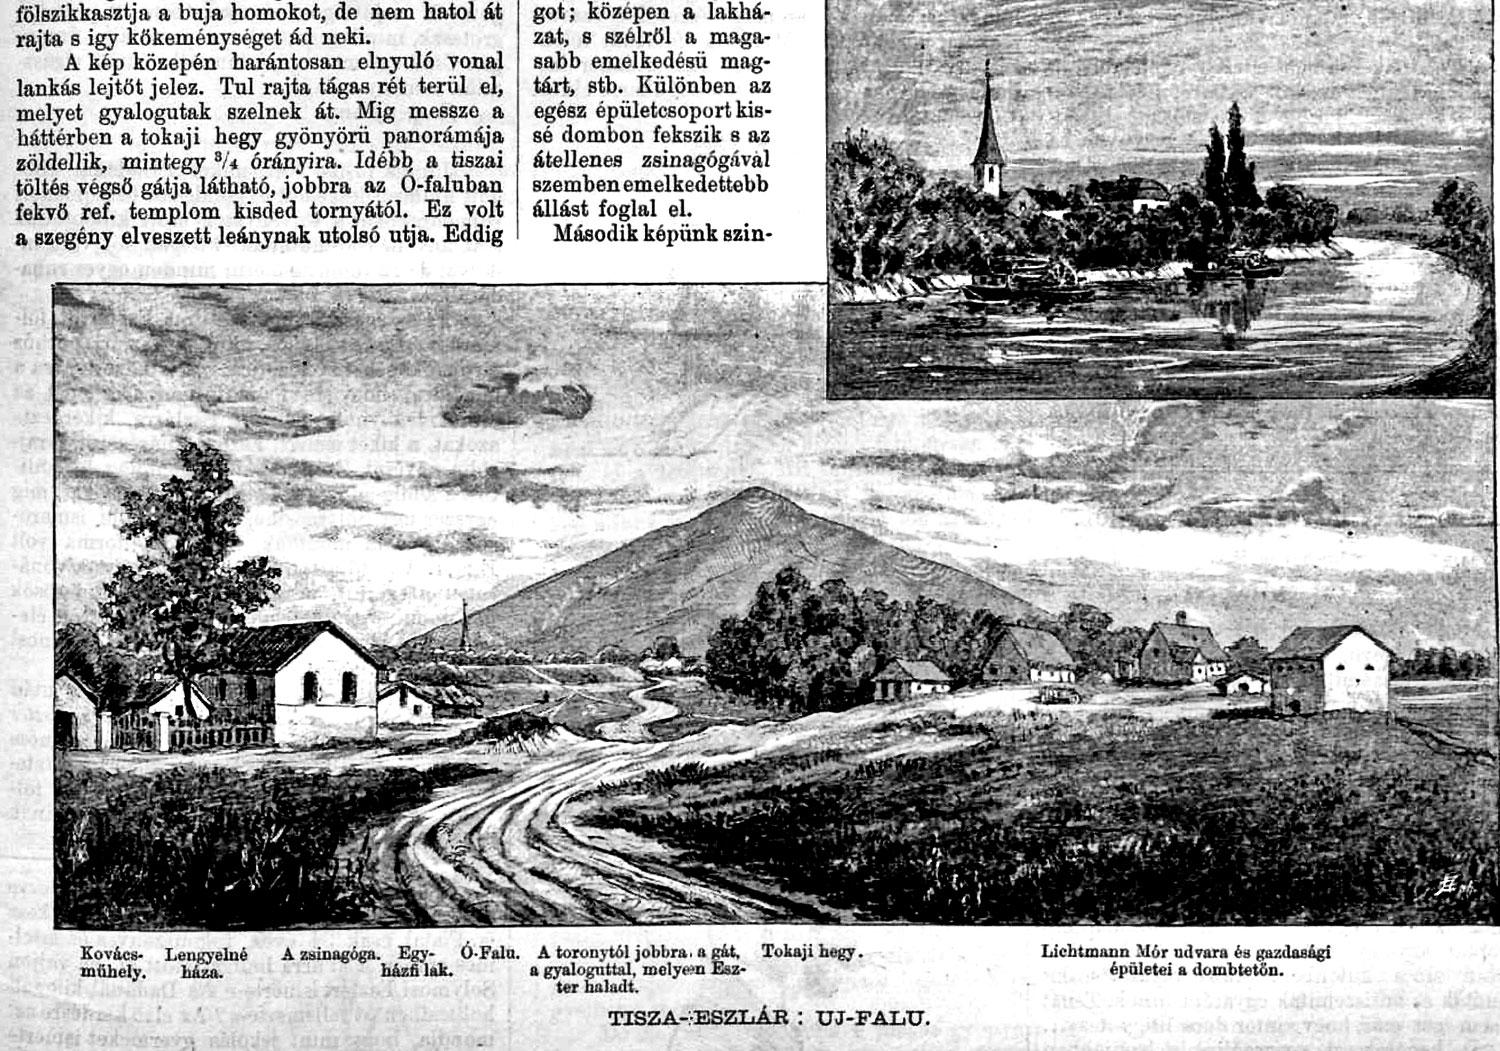 Vasárnapi Újság Tiszaeszlár illusztráció 1883/28.szám